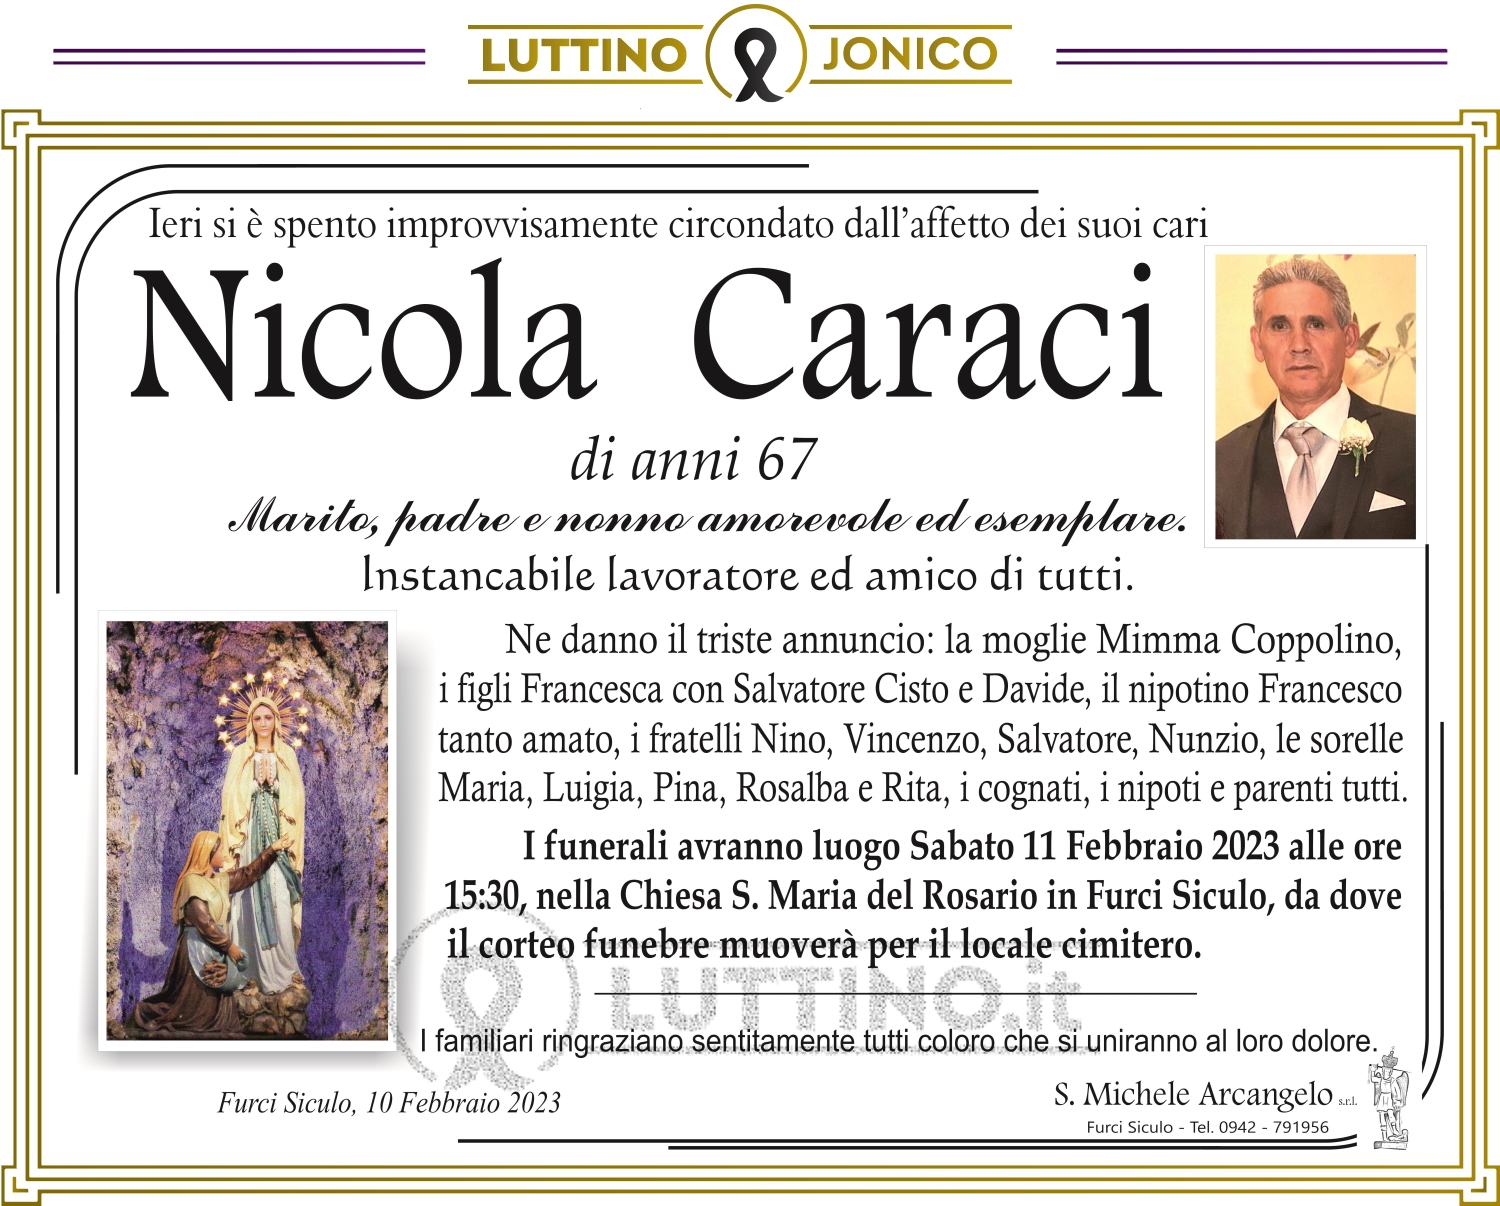 Nicola Caraci